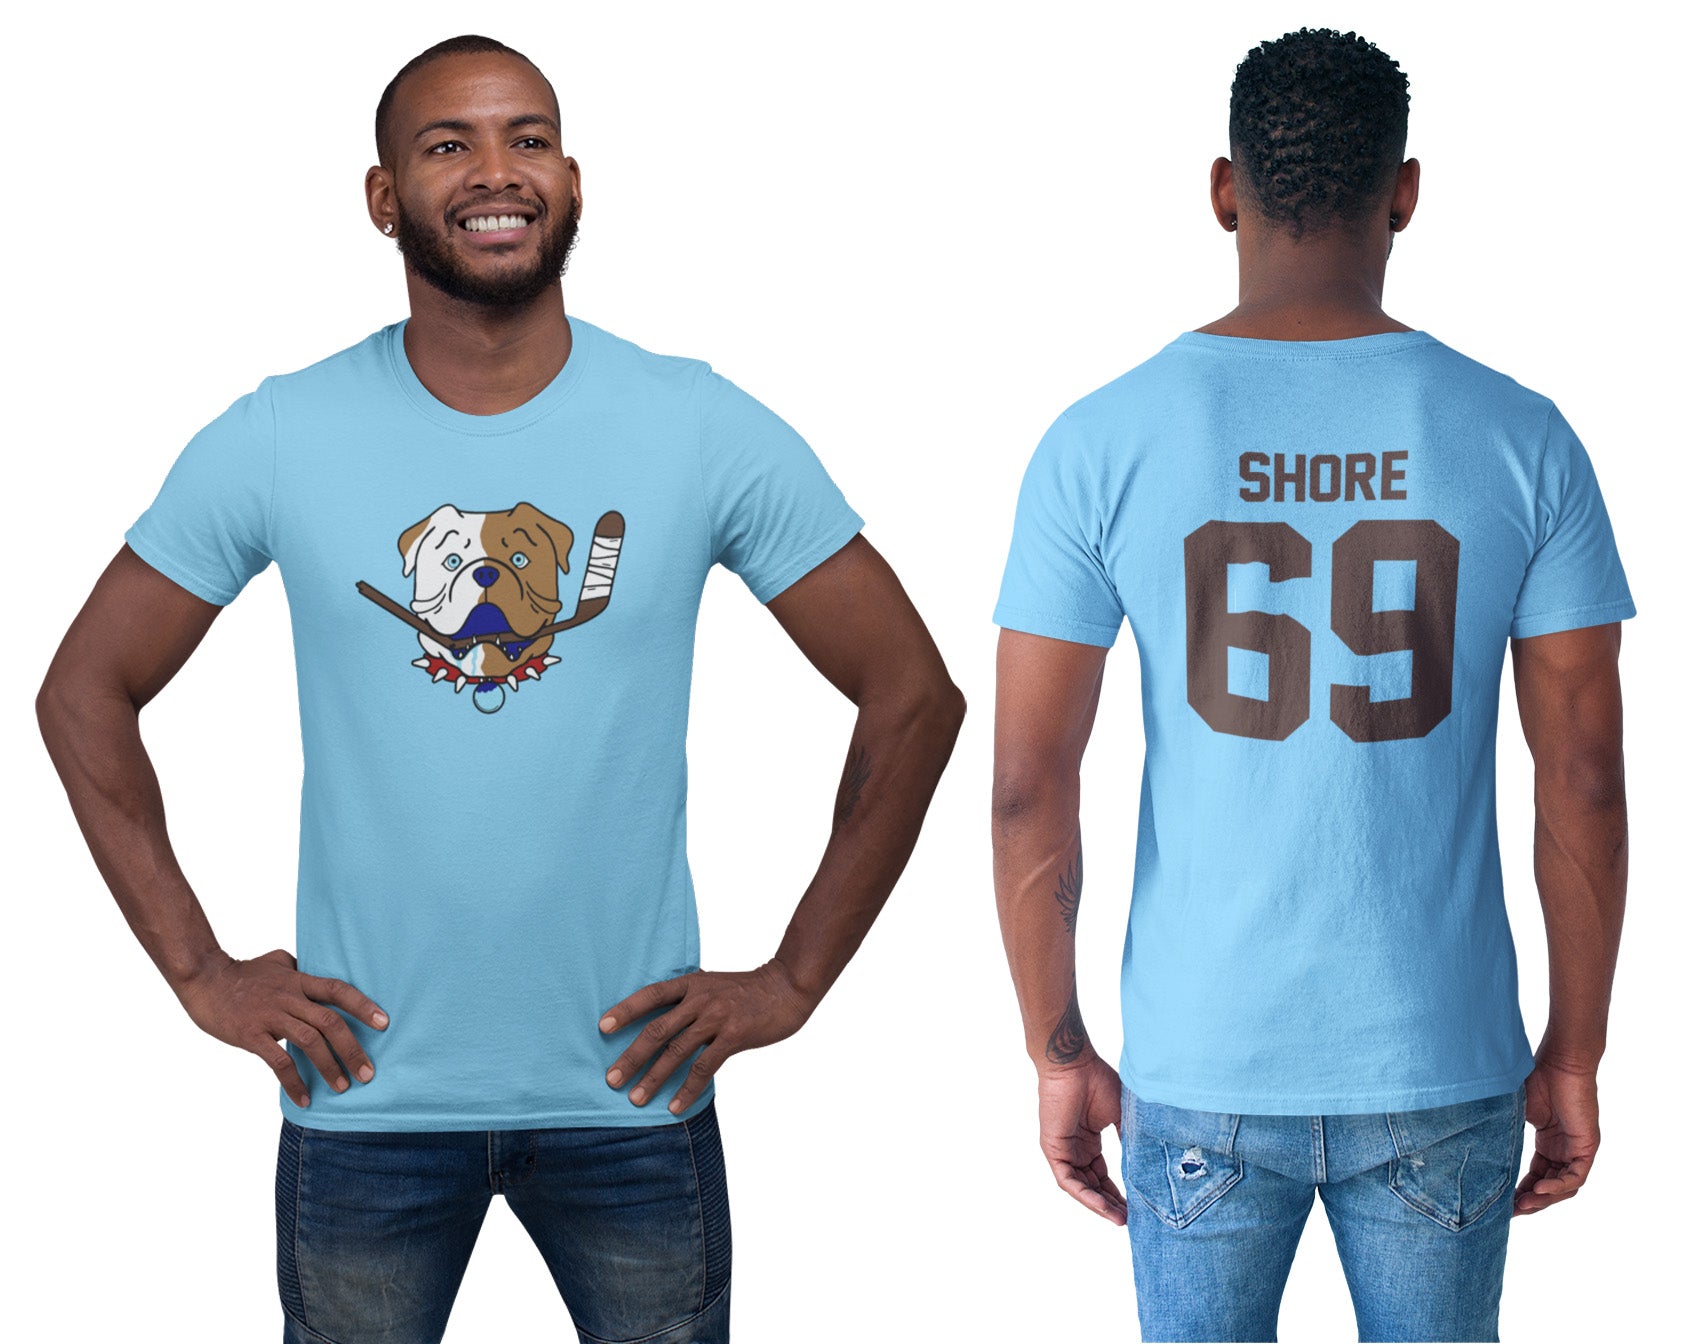 Premium Shoresy Sudbury Blueberry Bulldogs Best T-Shirt, hoodie